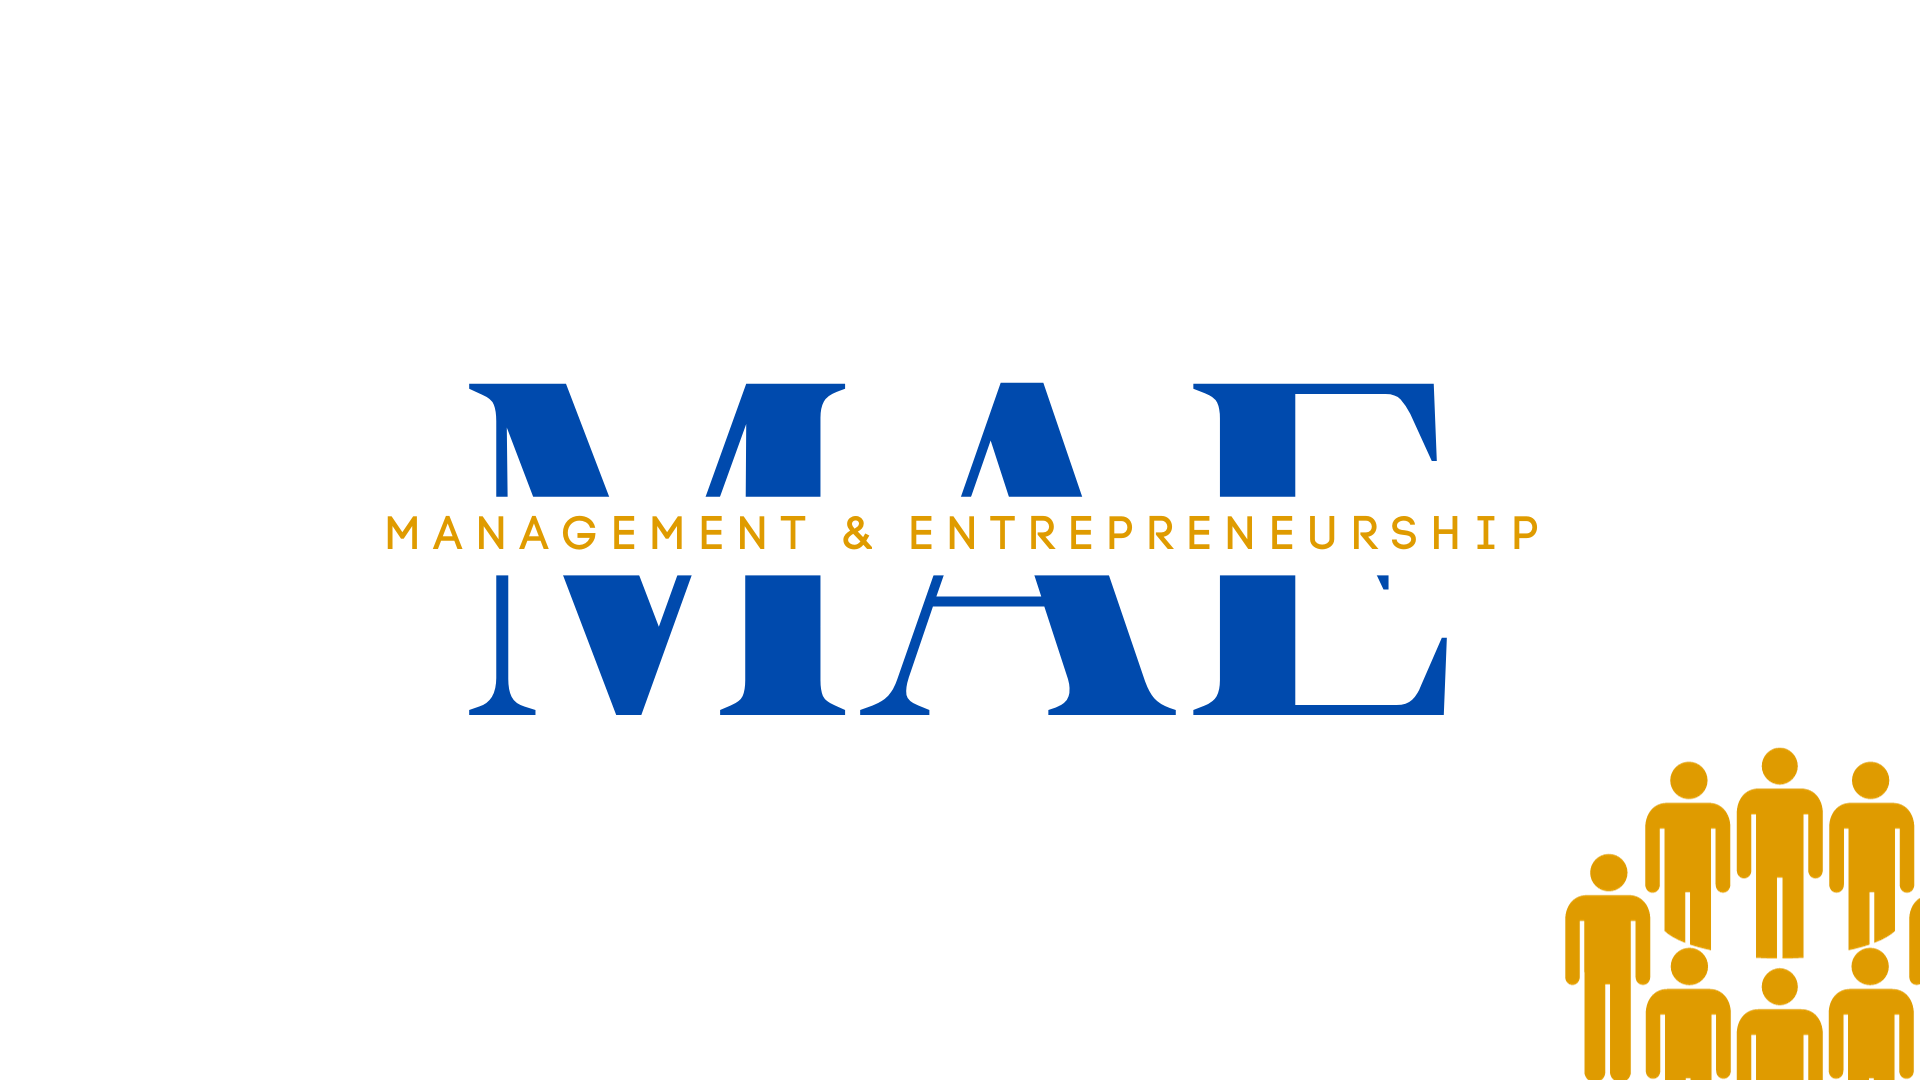 Banner for Management & Entrepreneurship Society